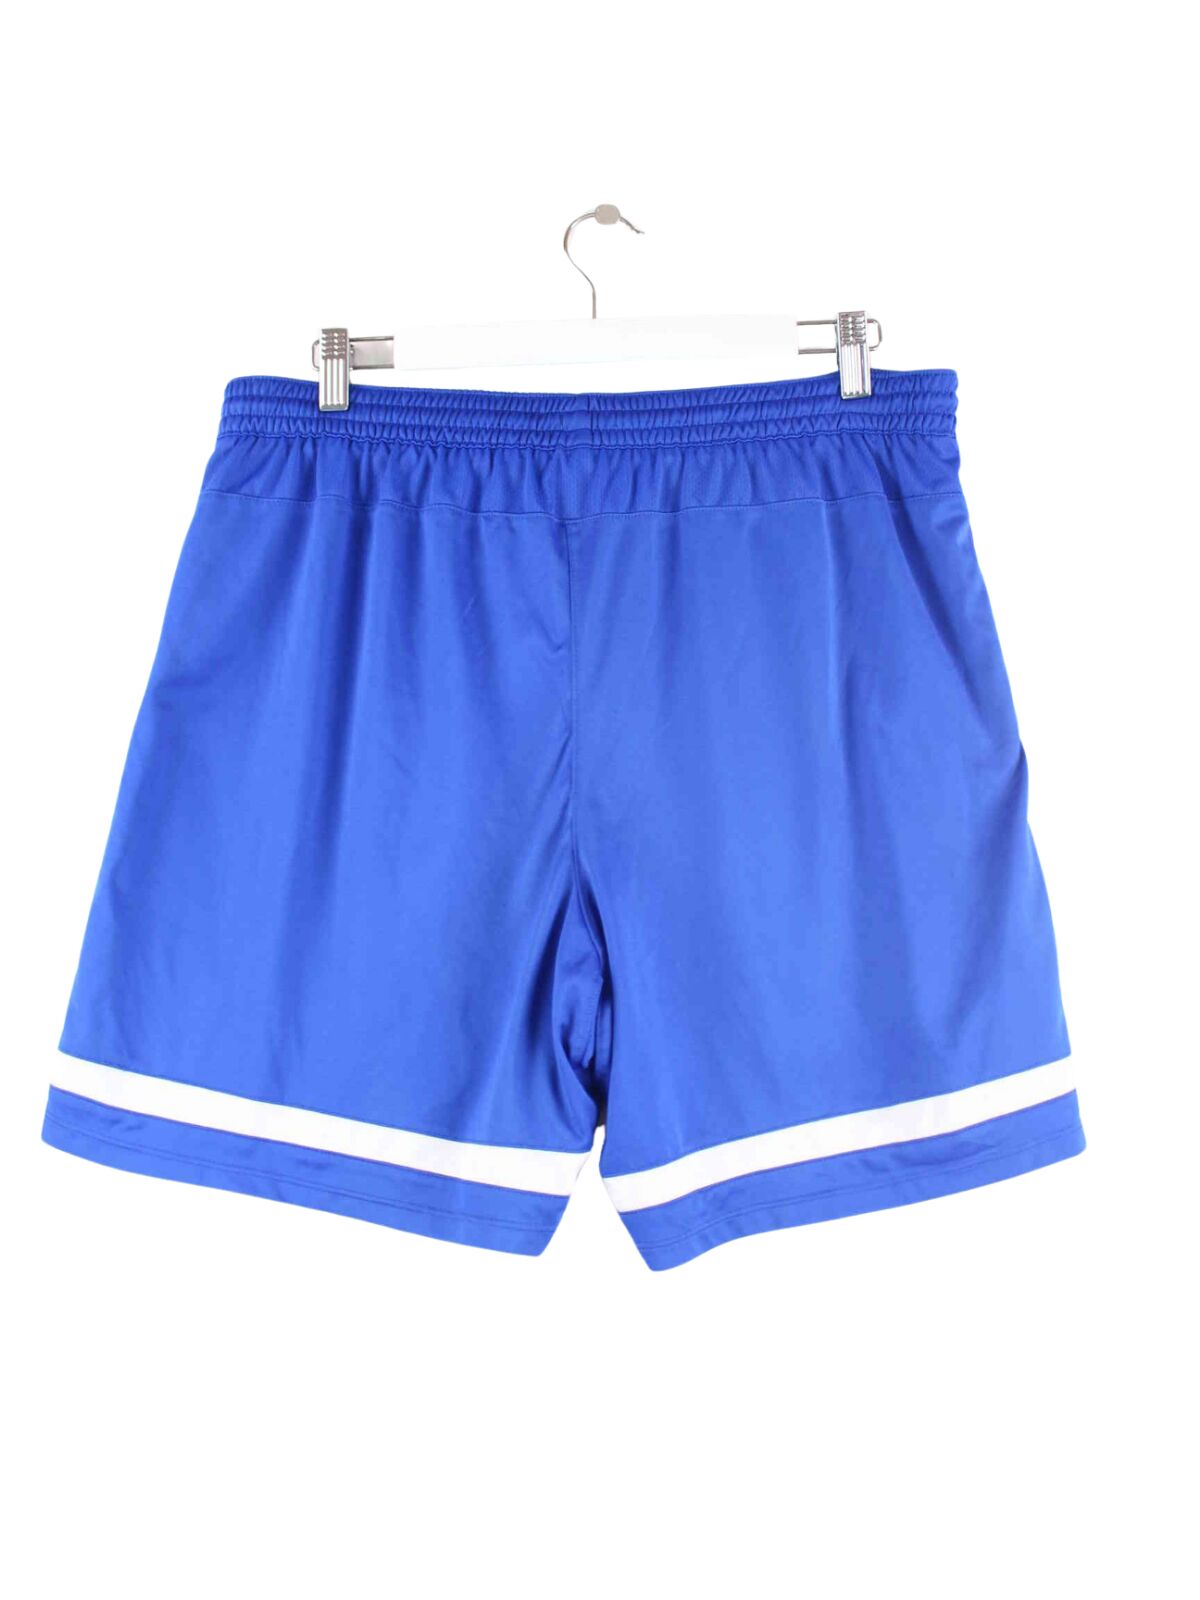 Nike Dri Fit #18 Shorts Blau L (back image)